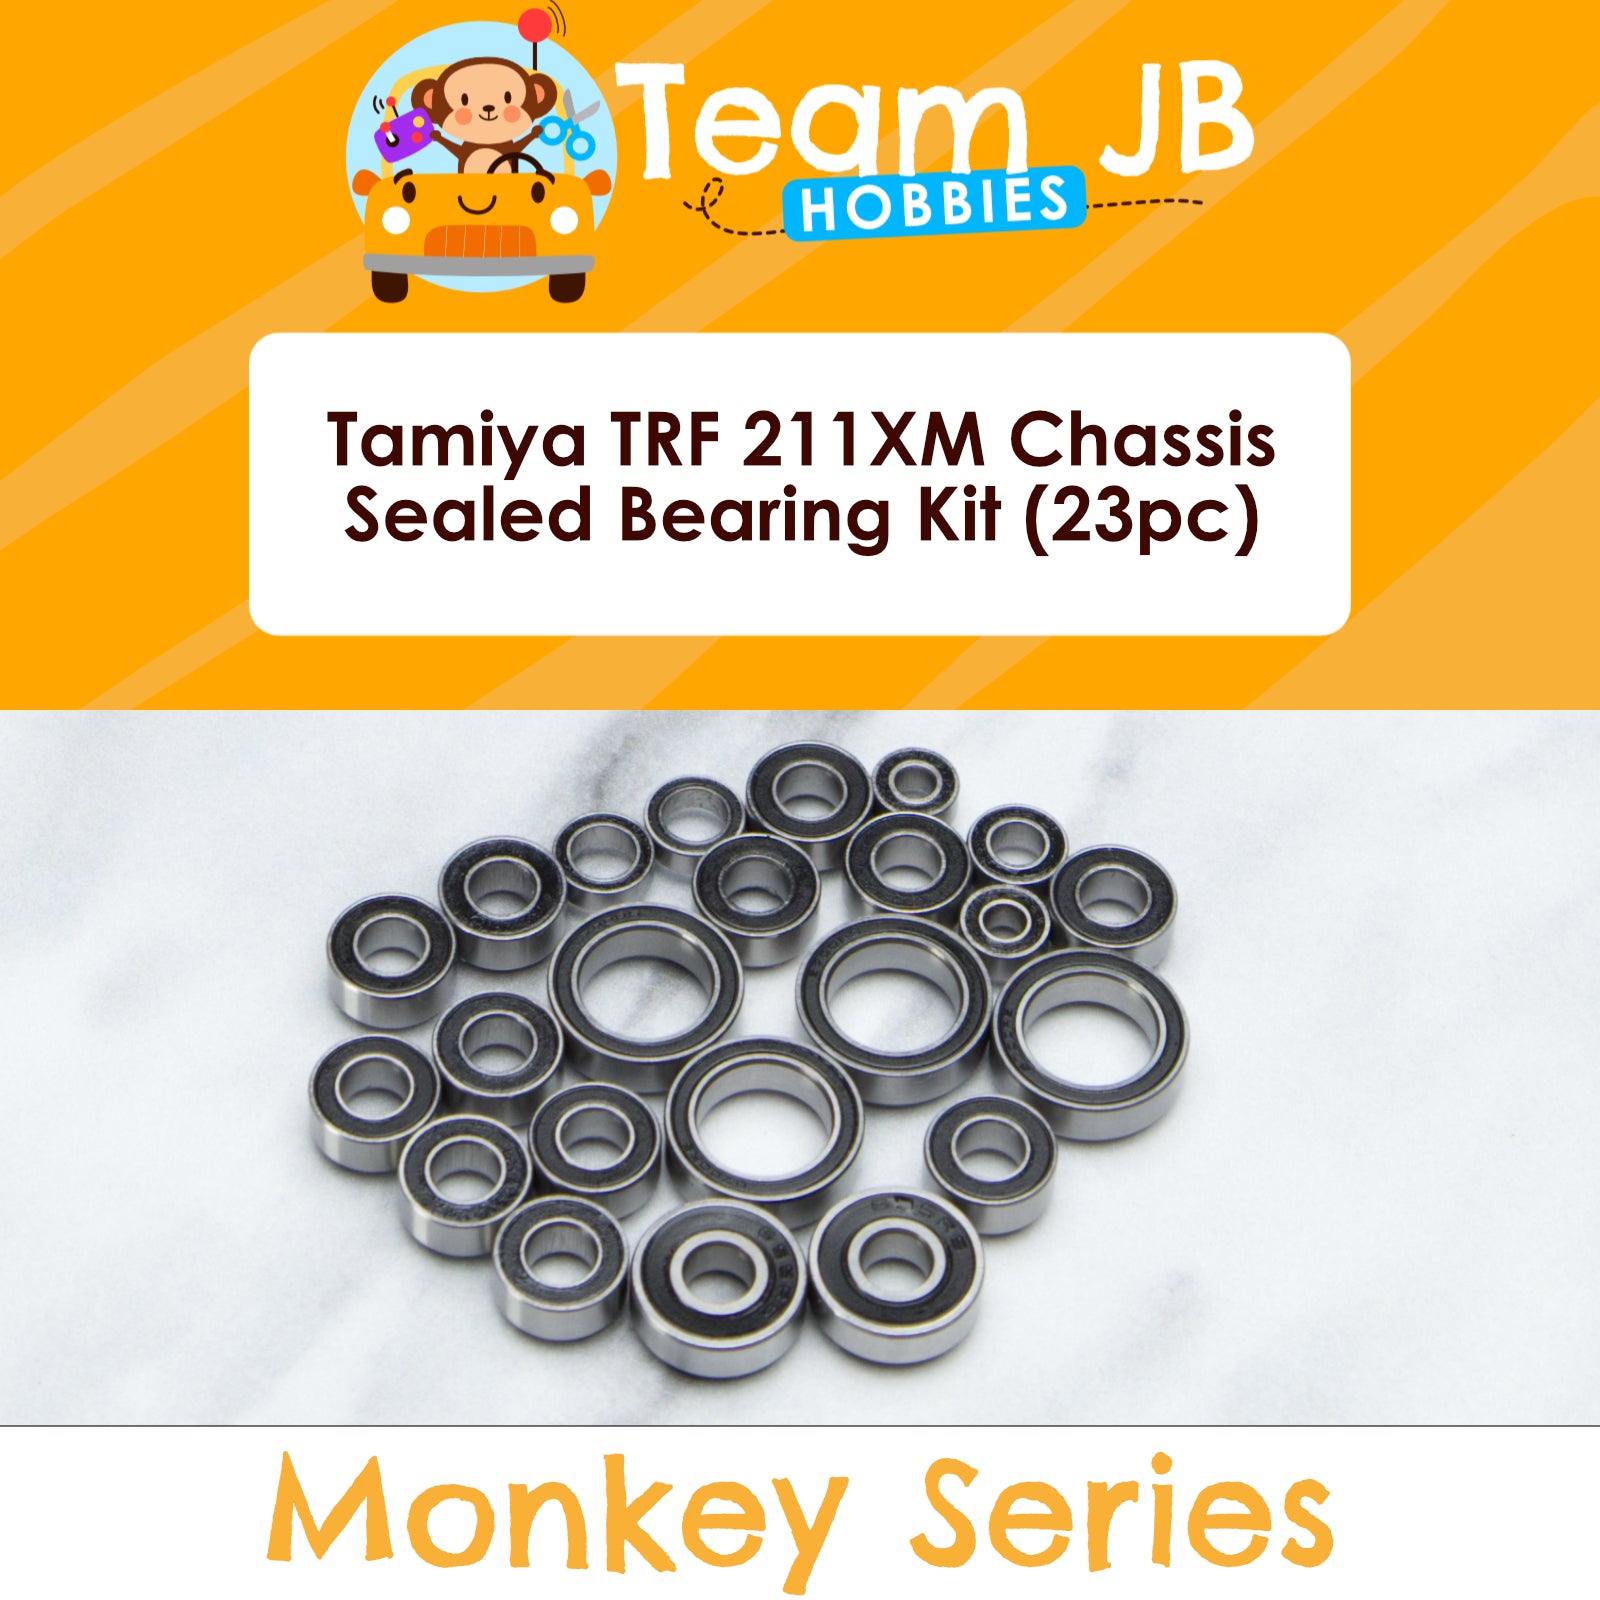 Tamiya TRF 211XM Chassis - Sealed Bearing Kit